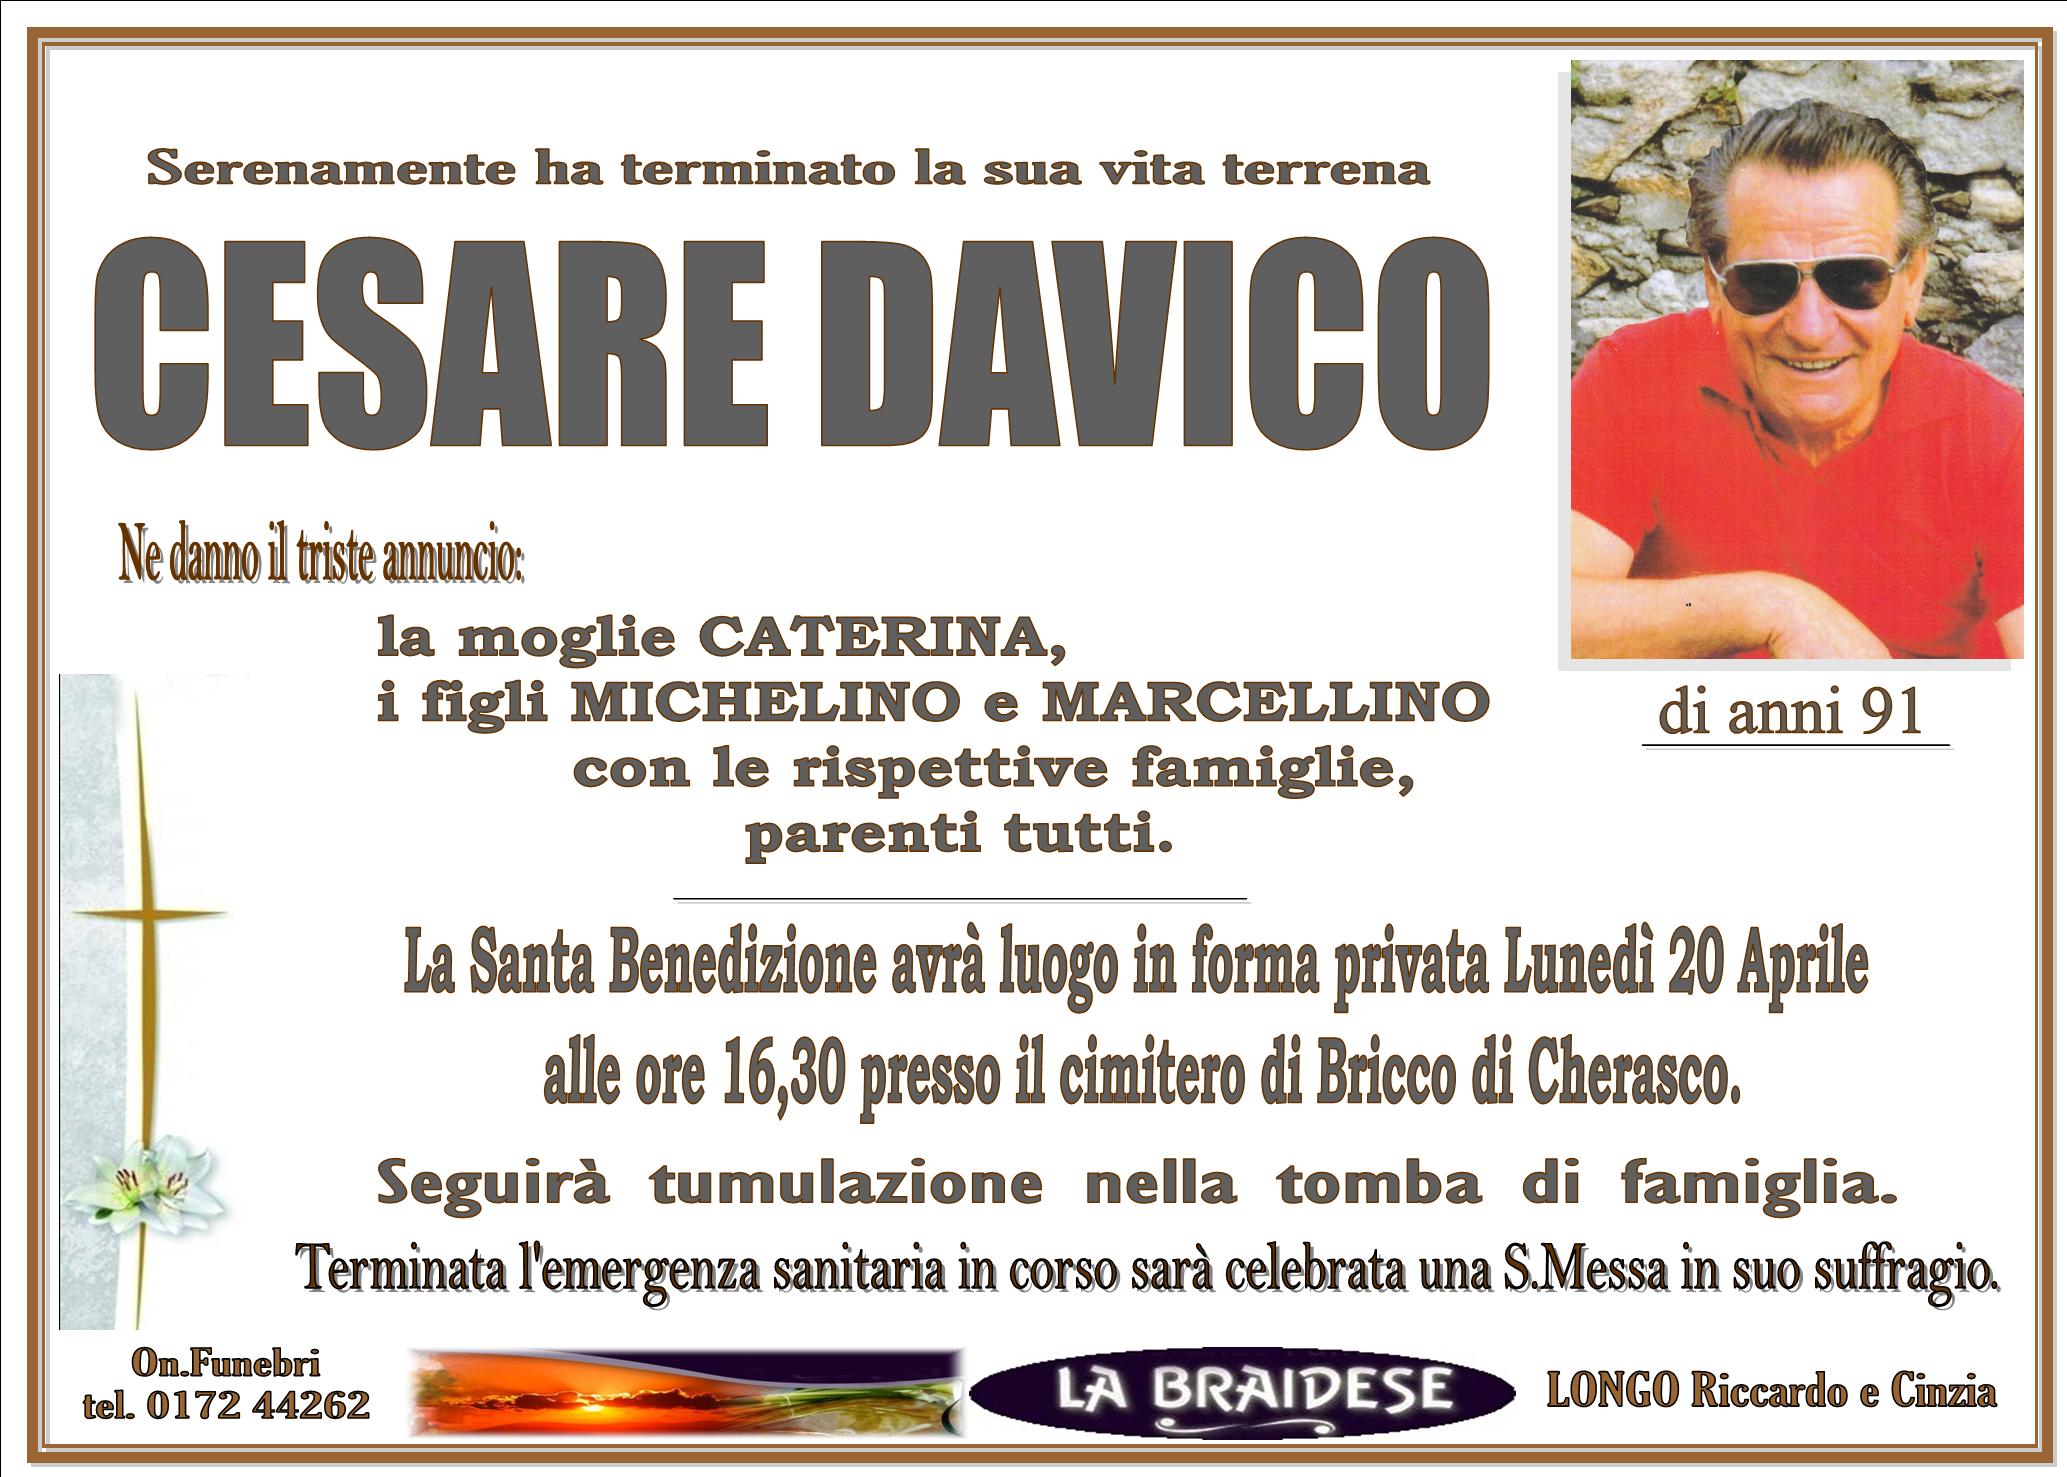 Cesare Davico